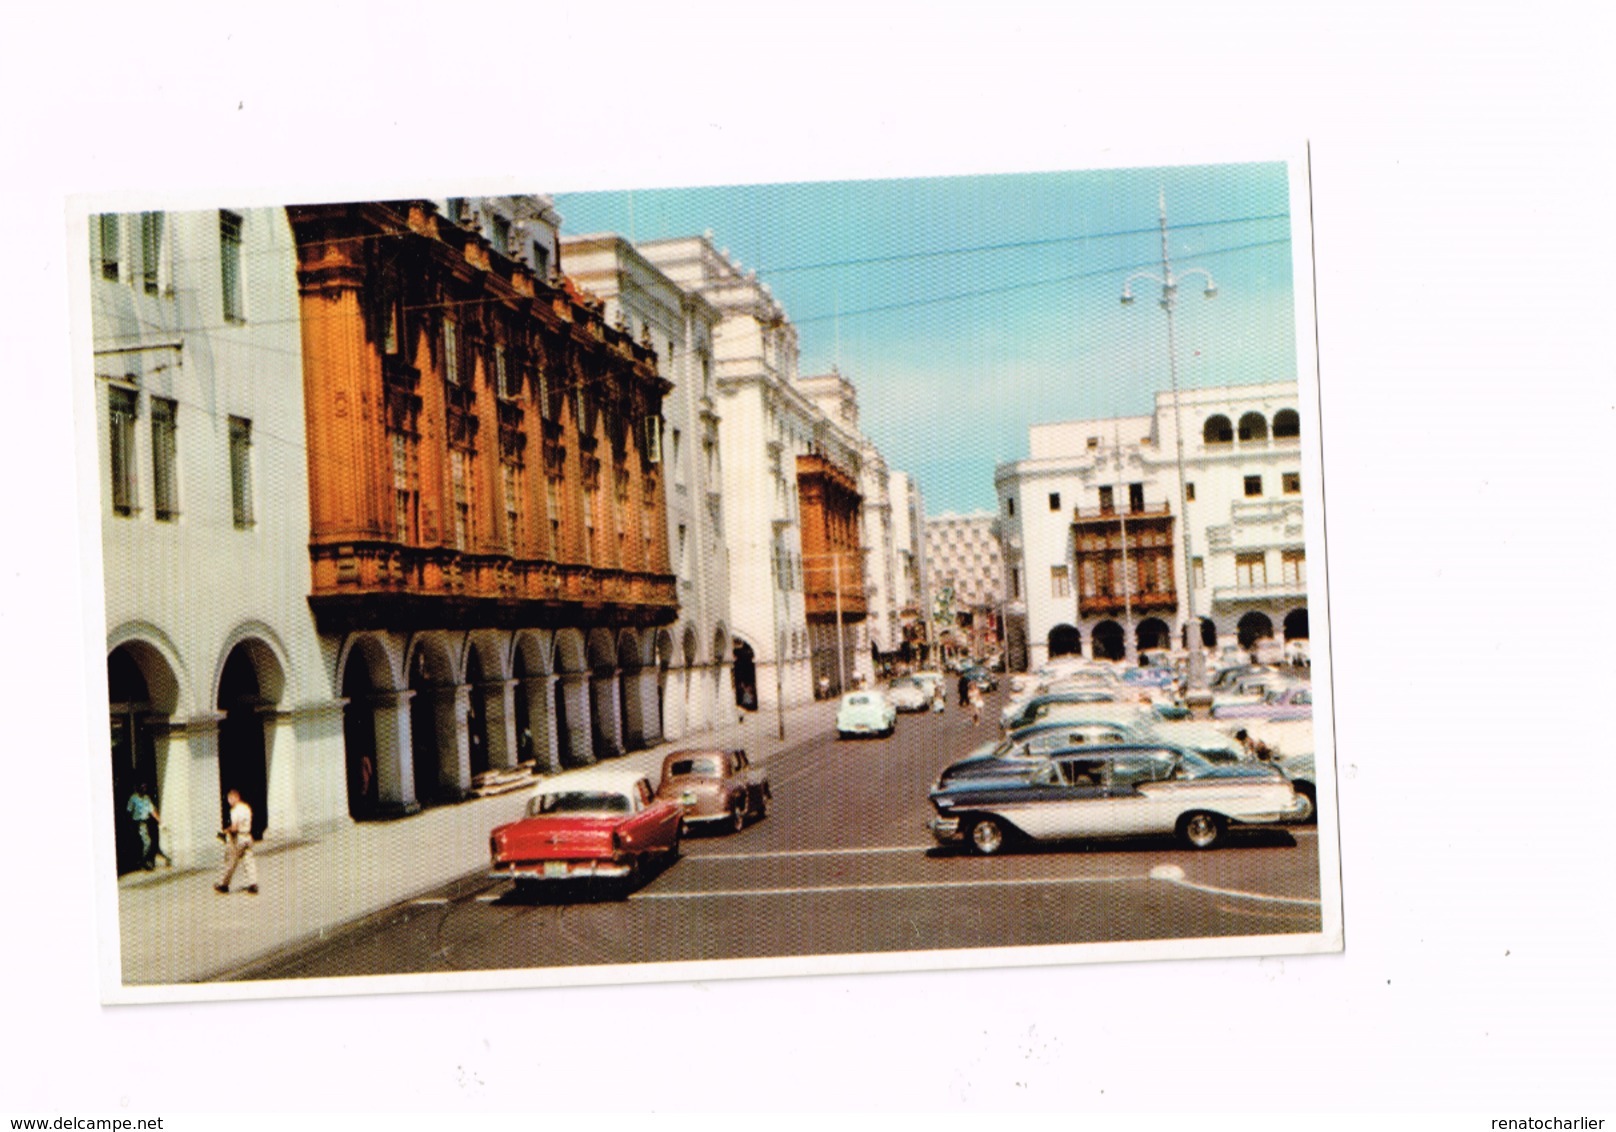 Portales De La Plaza De Armas,Lima.OLdtimer.Vieilles Autos. - Pérou